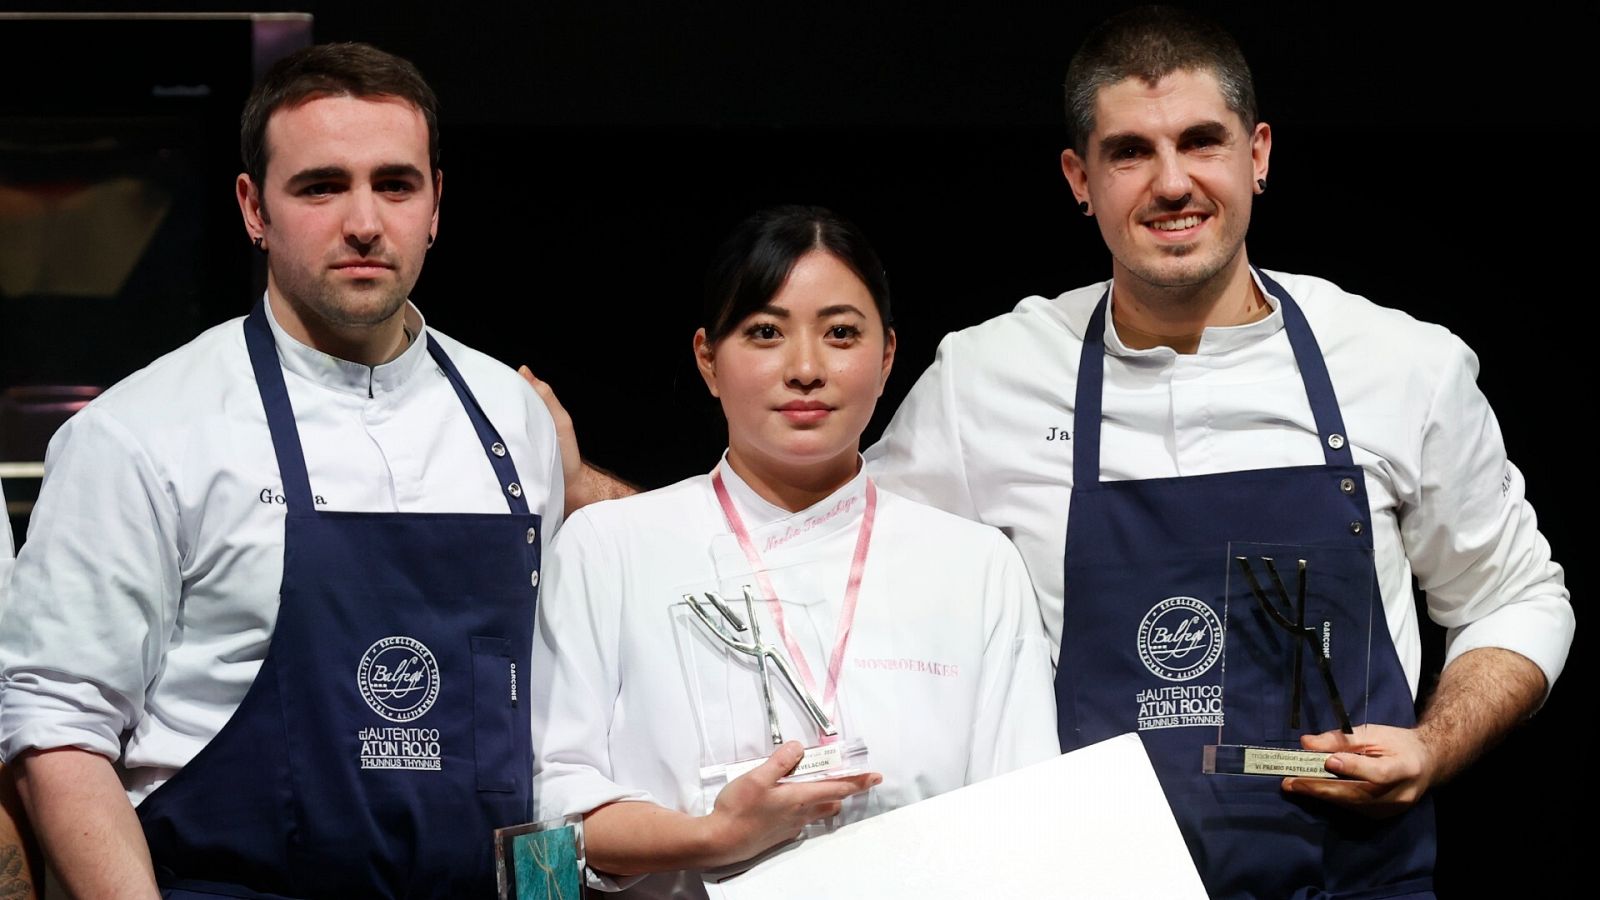 Noelia Tomoshige posa tras recibir el premio de "Pastelera revelación 2023" junto a Gorka Rico (i) y Javier Rivero, ambos galardonados como "Cocineros revelación 2023" en Madrid Fusión